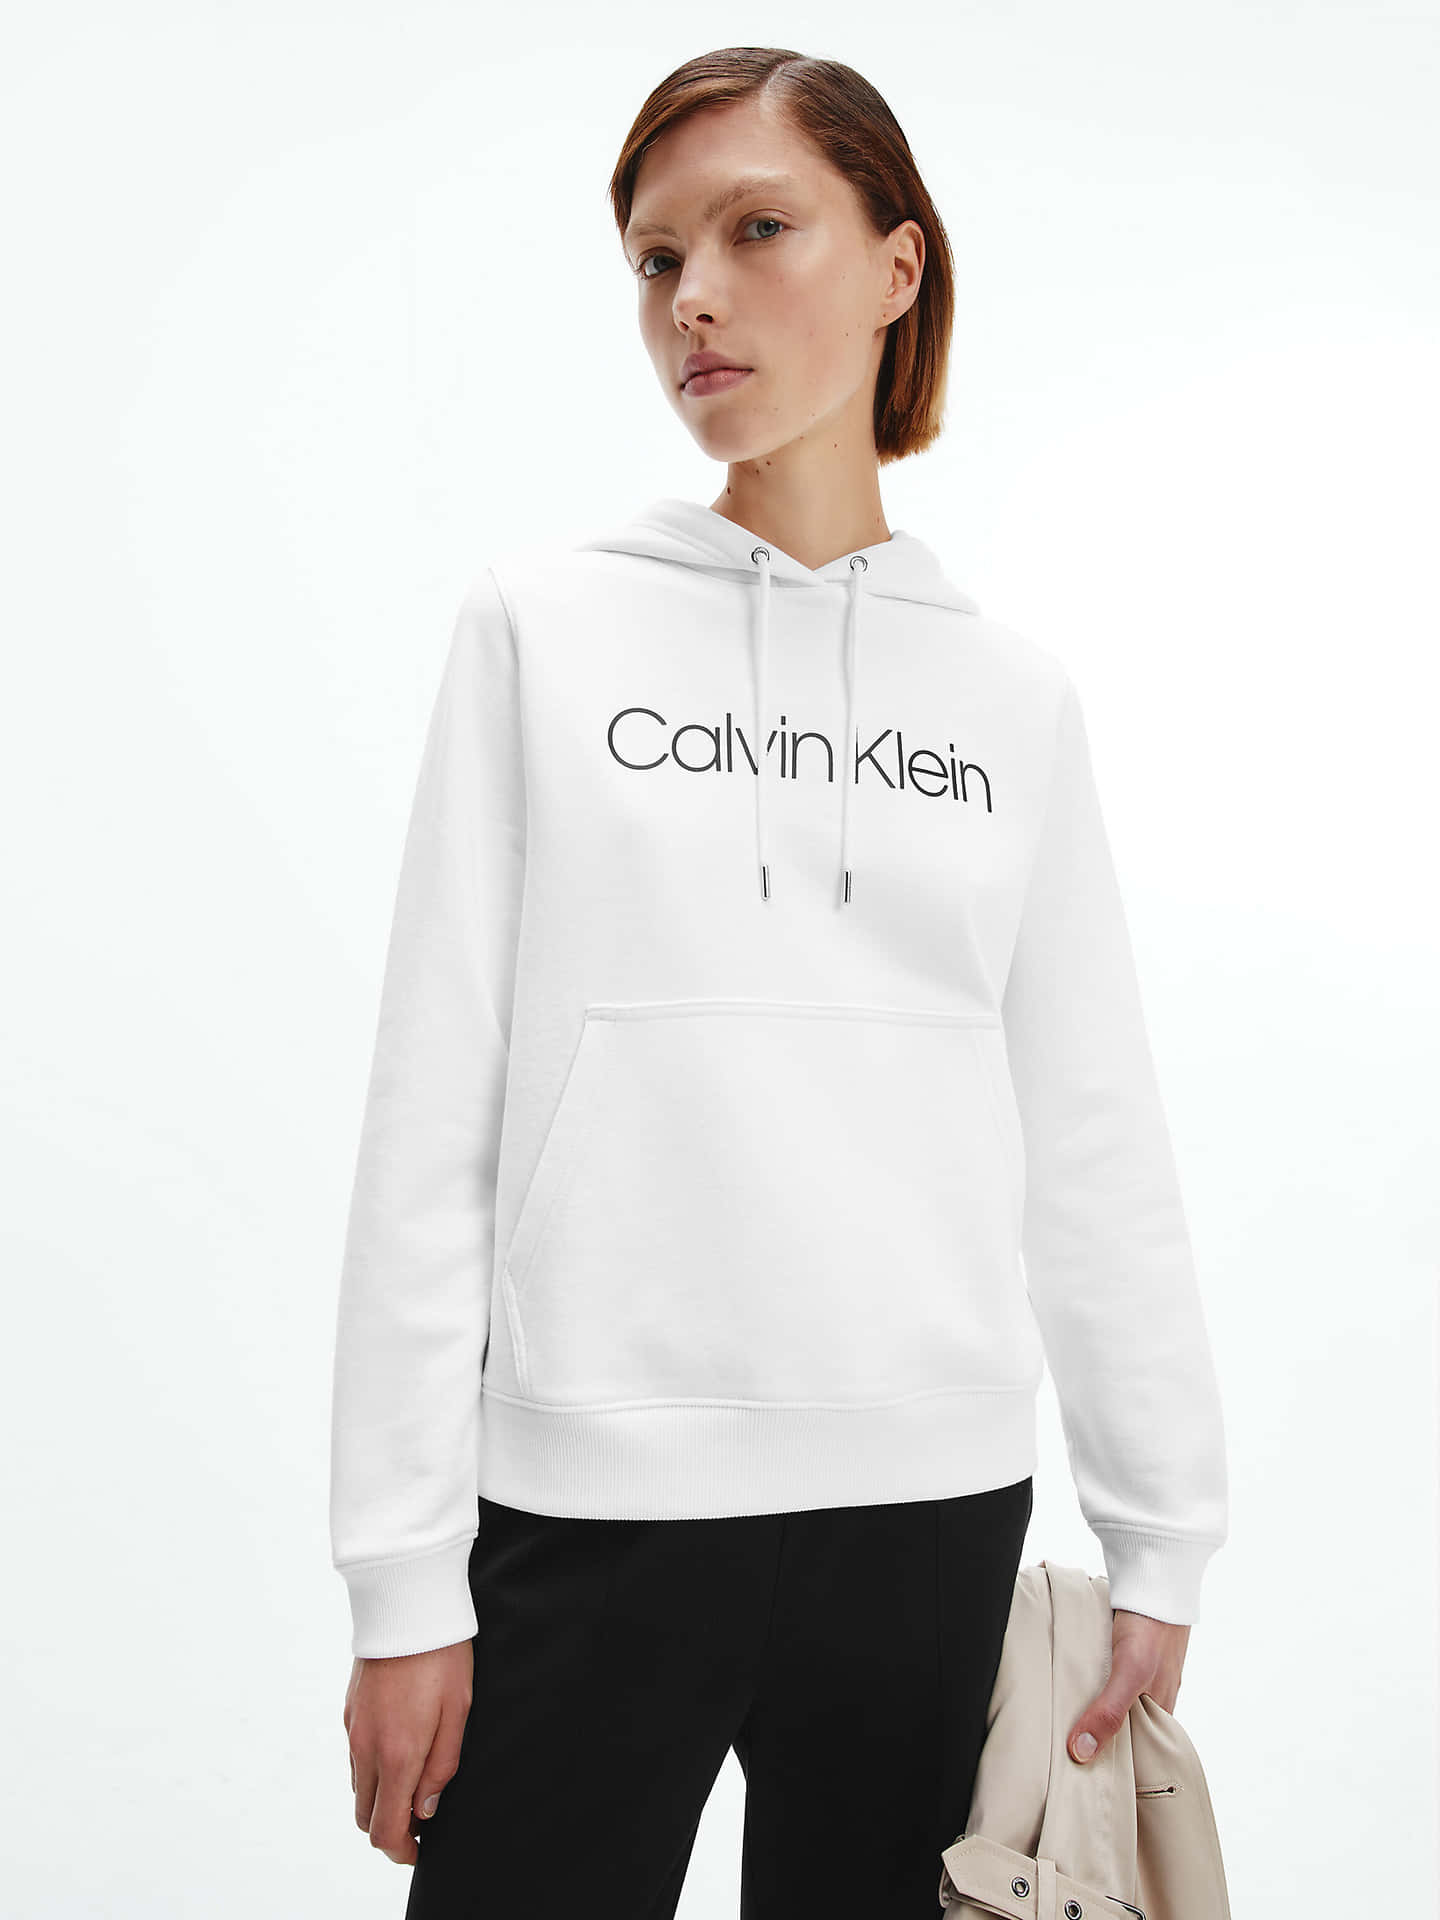 Utmärkdig Från Mängden I Nya Calvin Klein-modekläder.